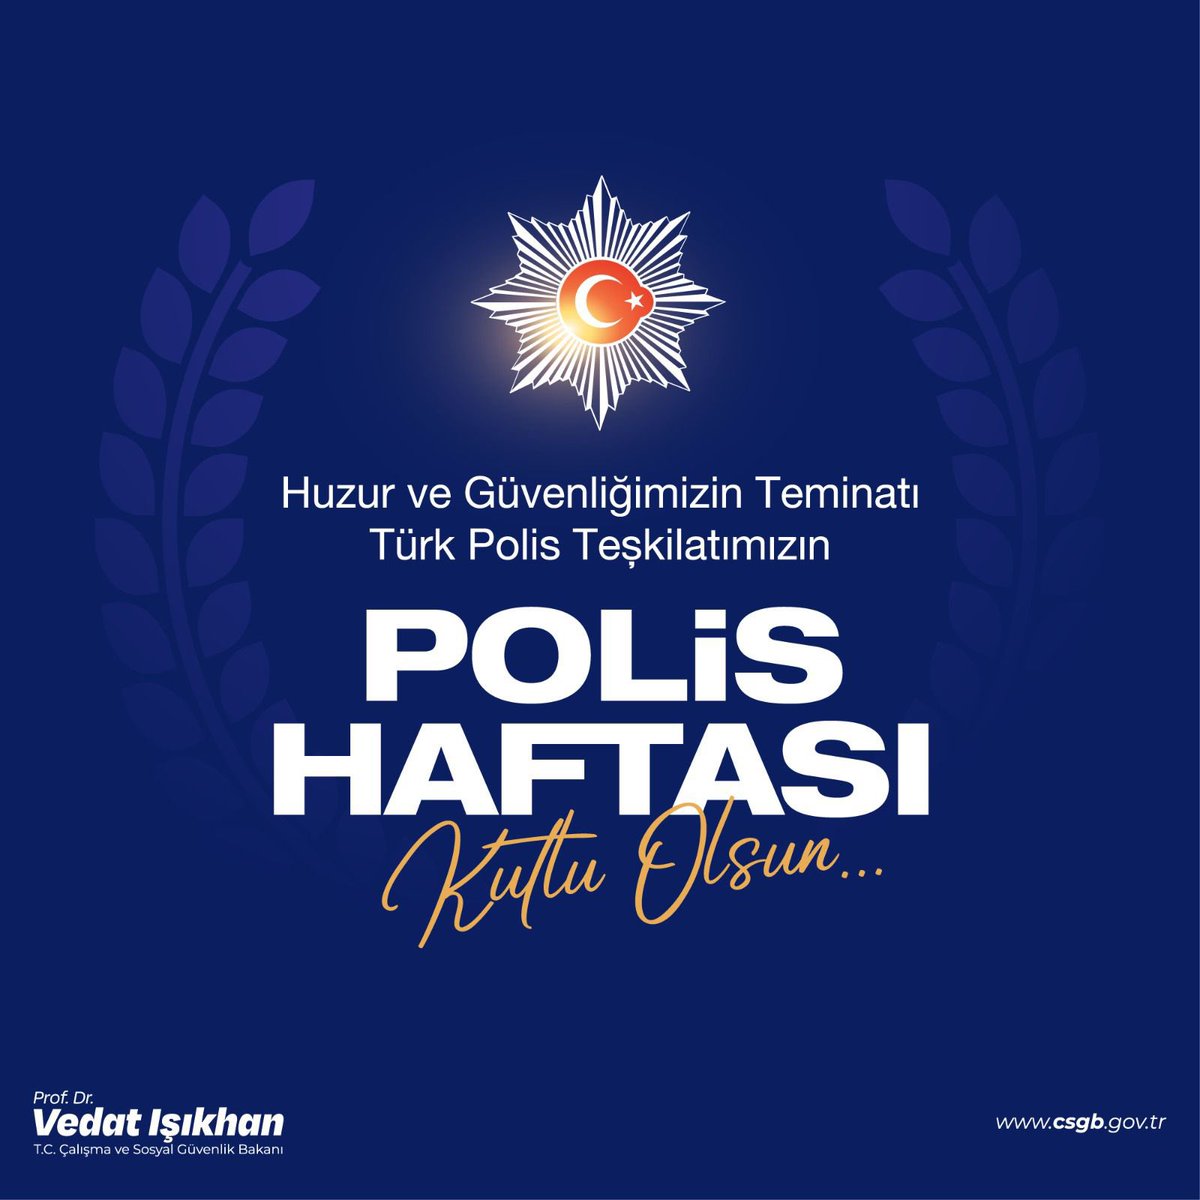 Milletimizin huzur ve güvenliğinin sarsılmaz teminatı Türk Polis Teşkilatı’mızın 179. kuruluş yıl dönümünü ve #PolisHaftası’nı kutluyorum. 🇹🇷